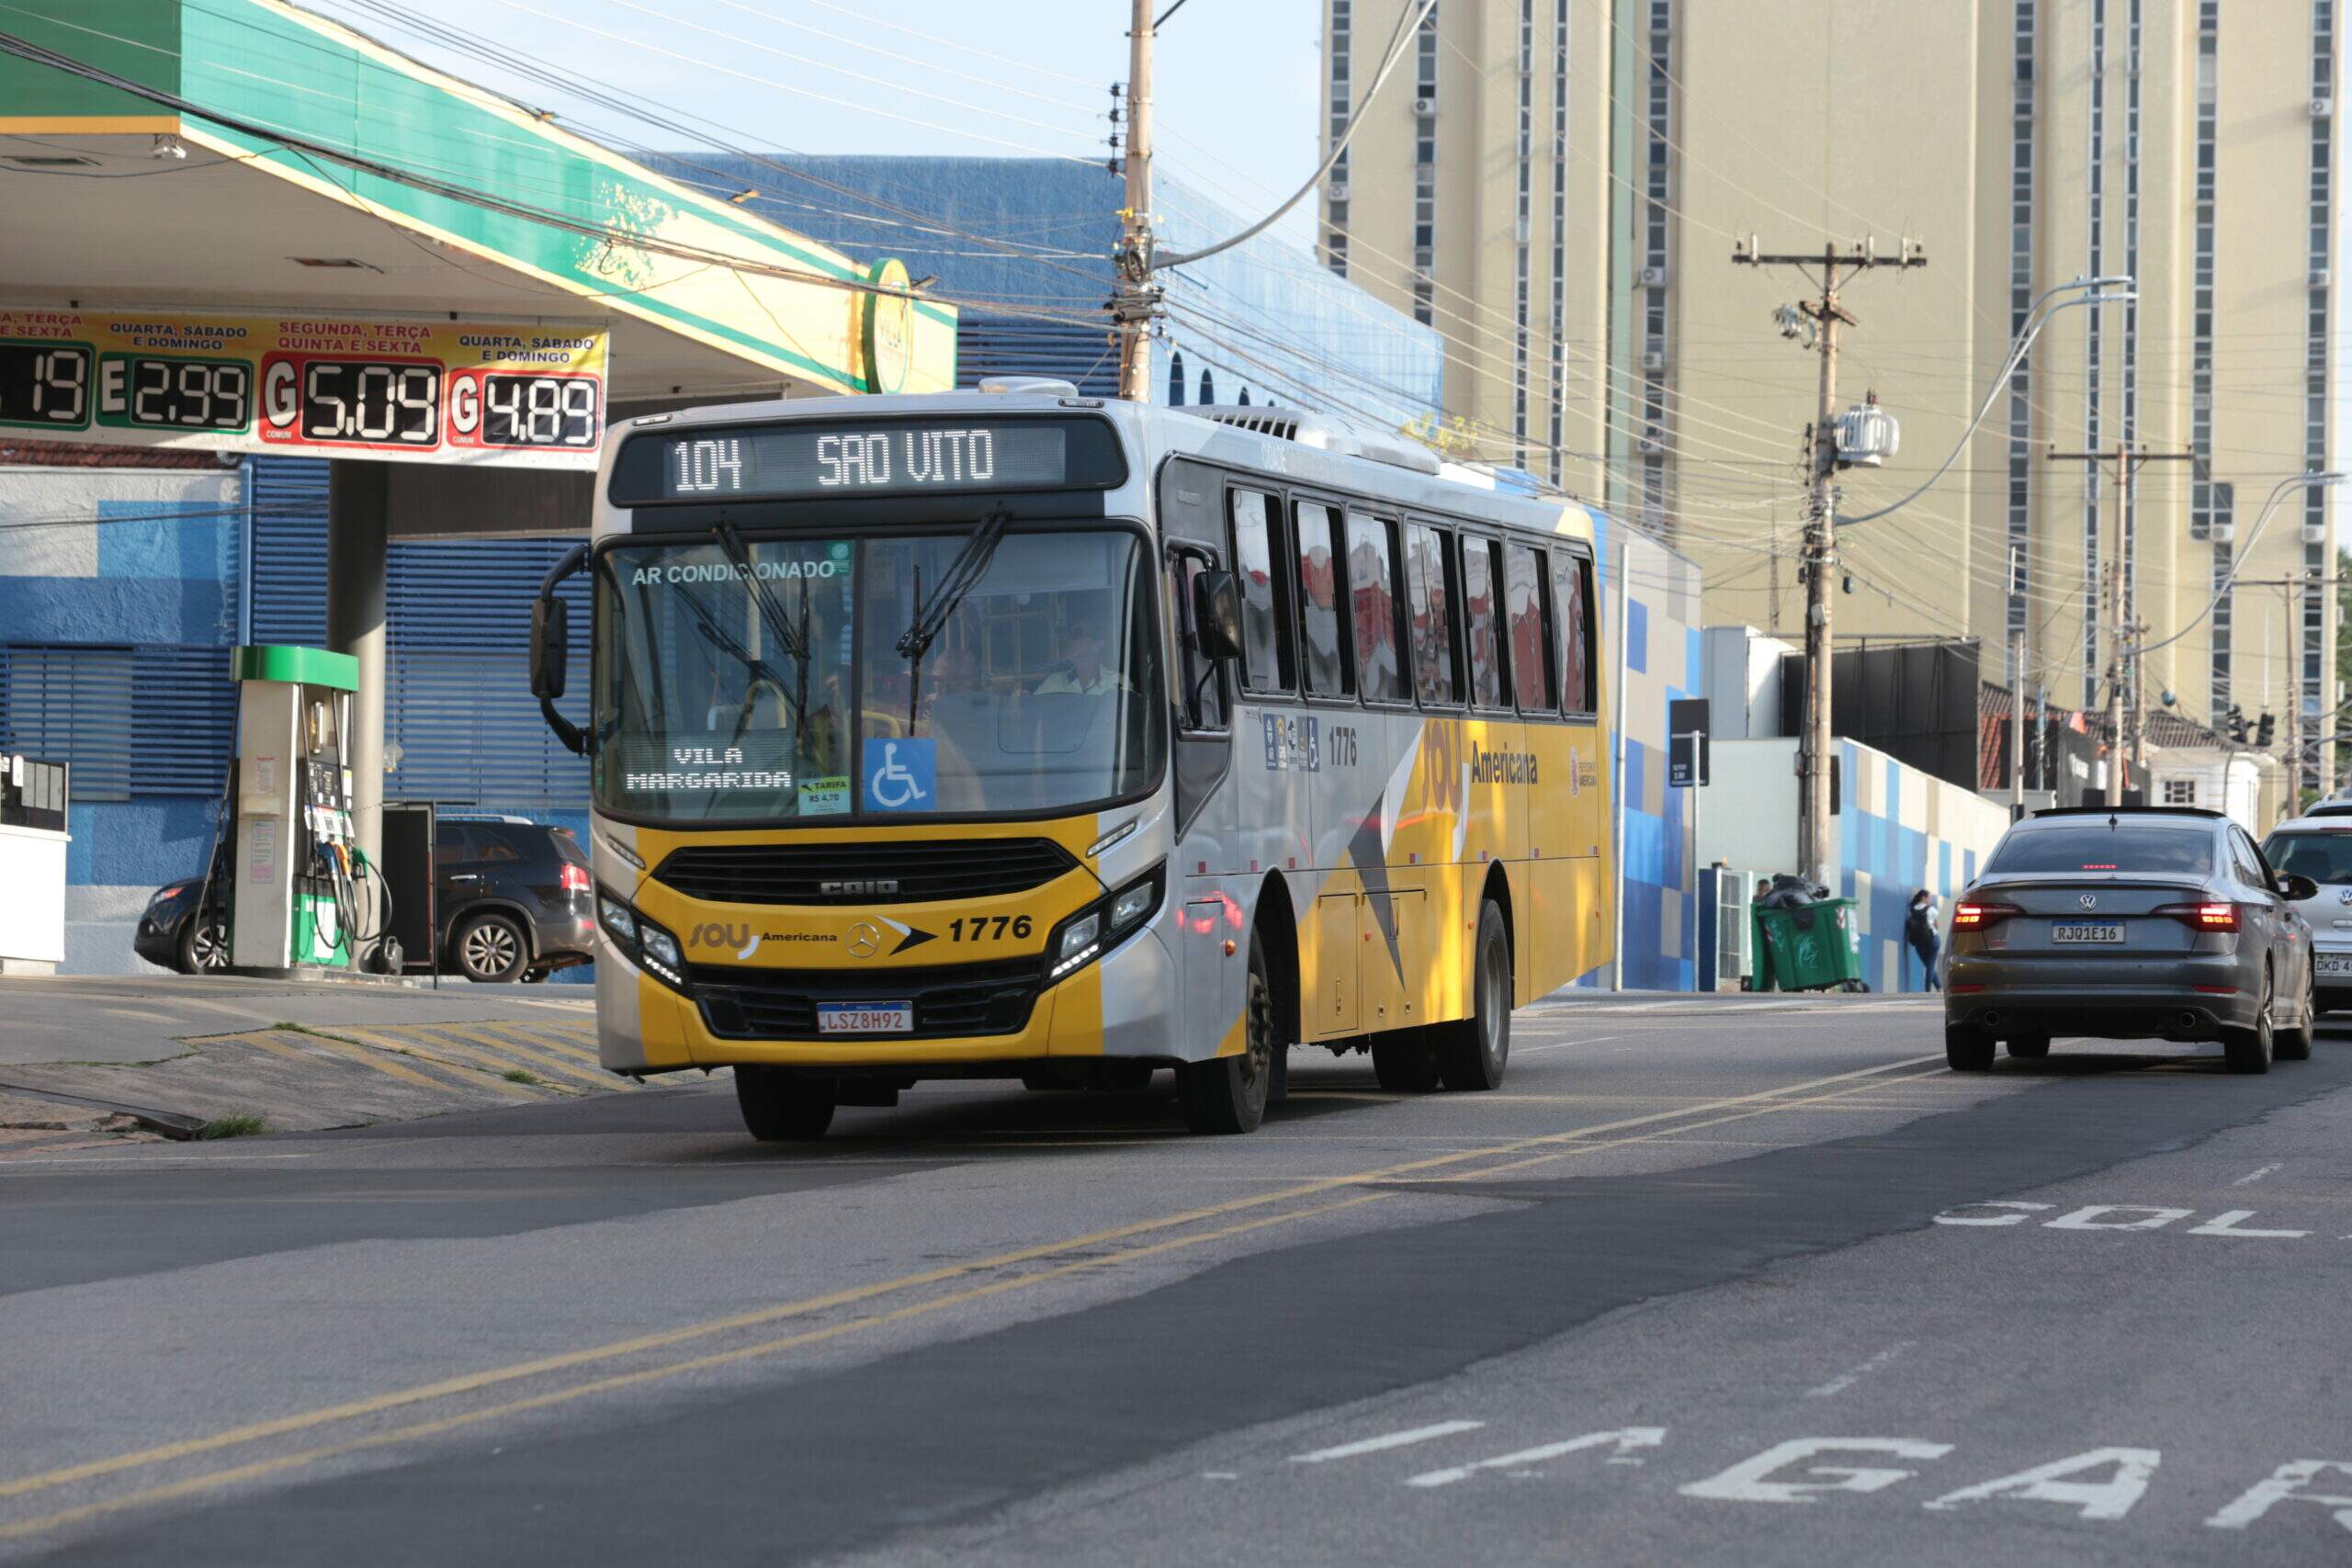 Americana (SP) vai pagar R$ 2,70 por passageiro à Sancetur como subsídio ao  transporte